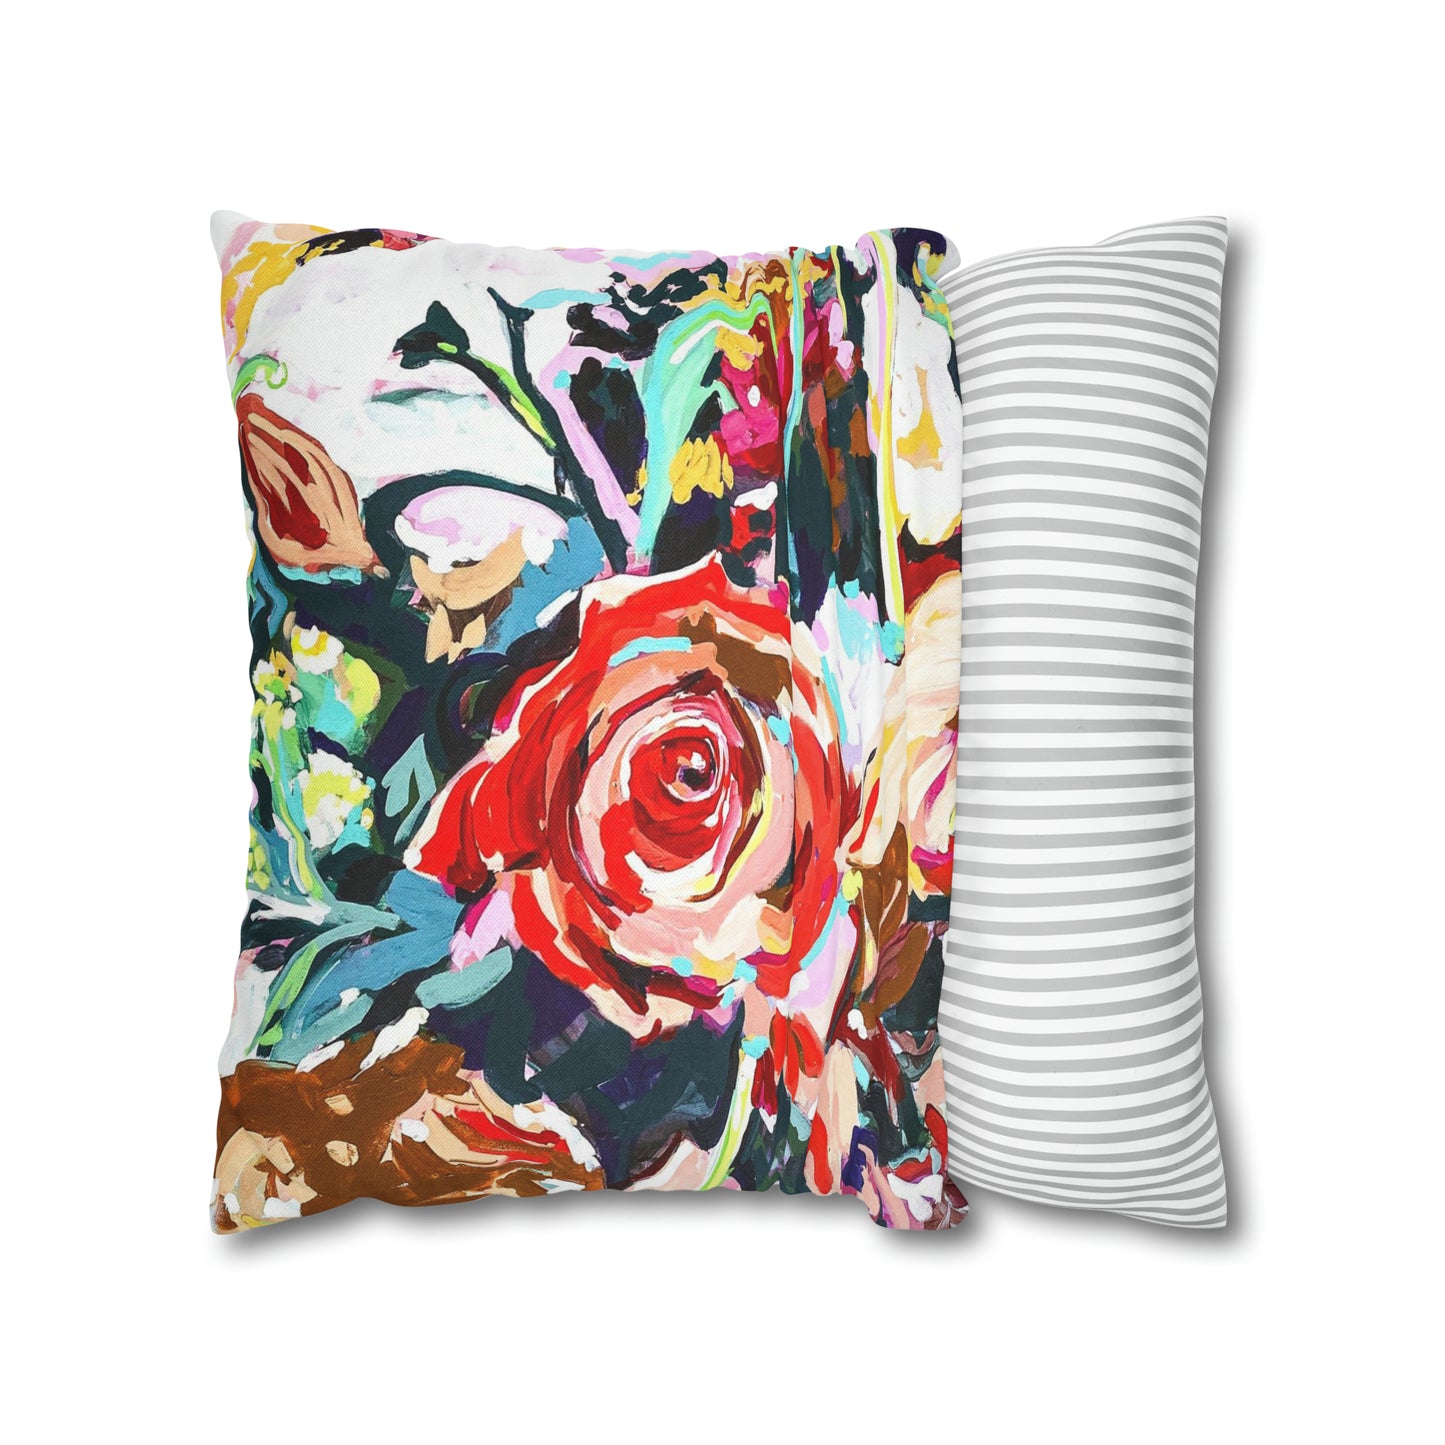 Washington Fountain/Floral pillow cover